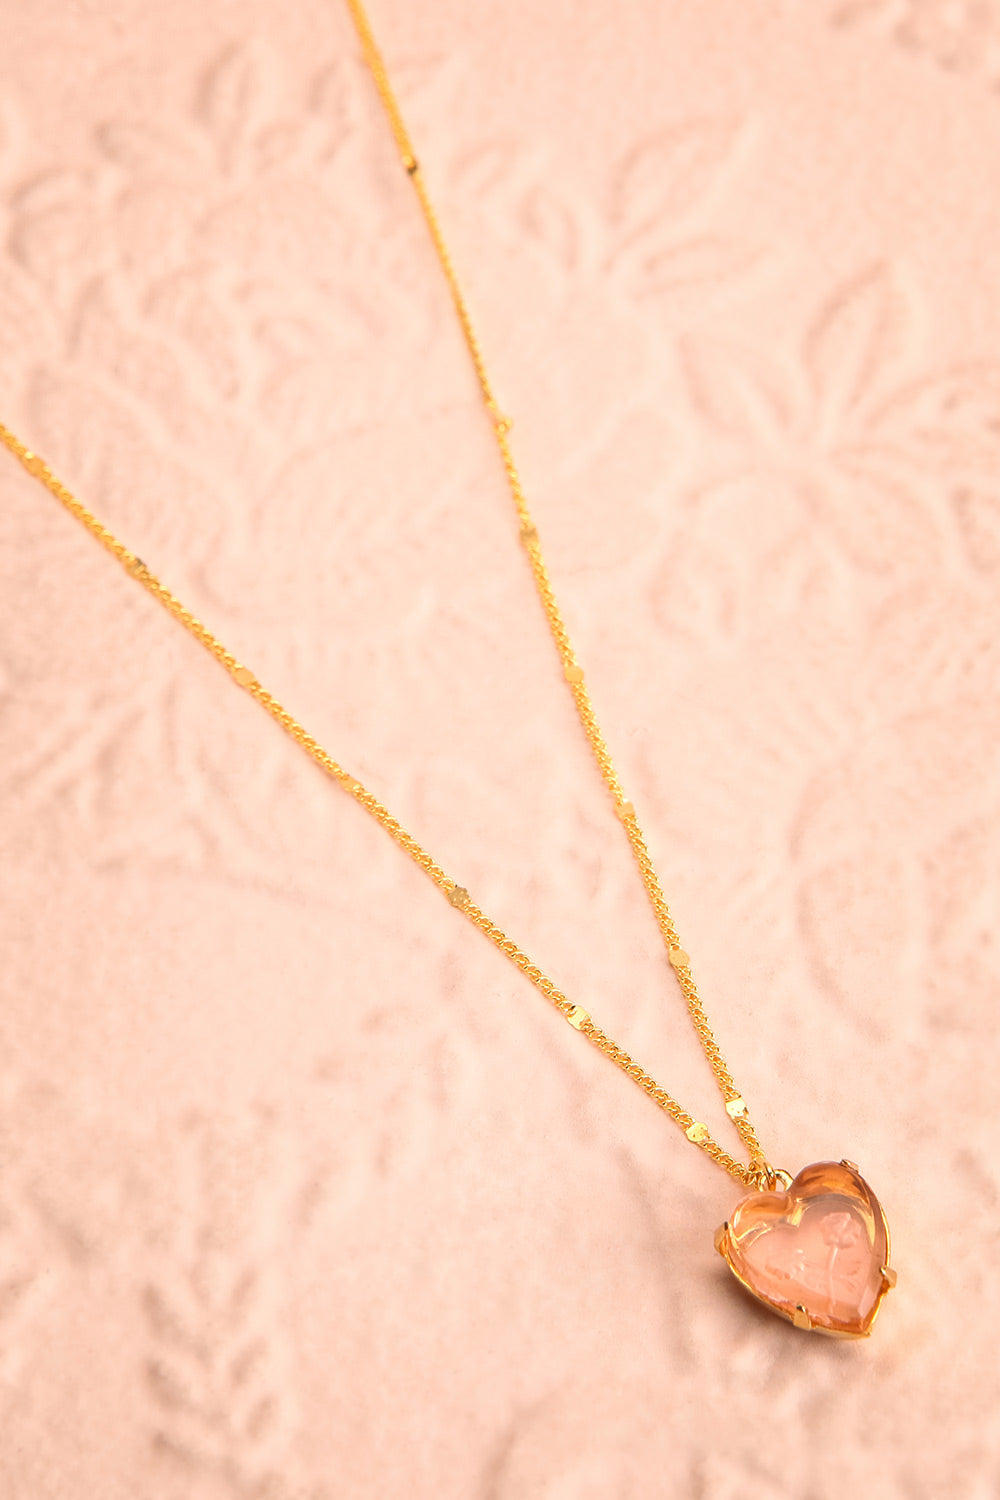 Autumn Aris Gold & Pink Pendant Necklace | Boutique 1861 flat view